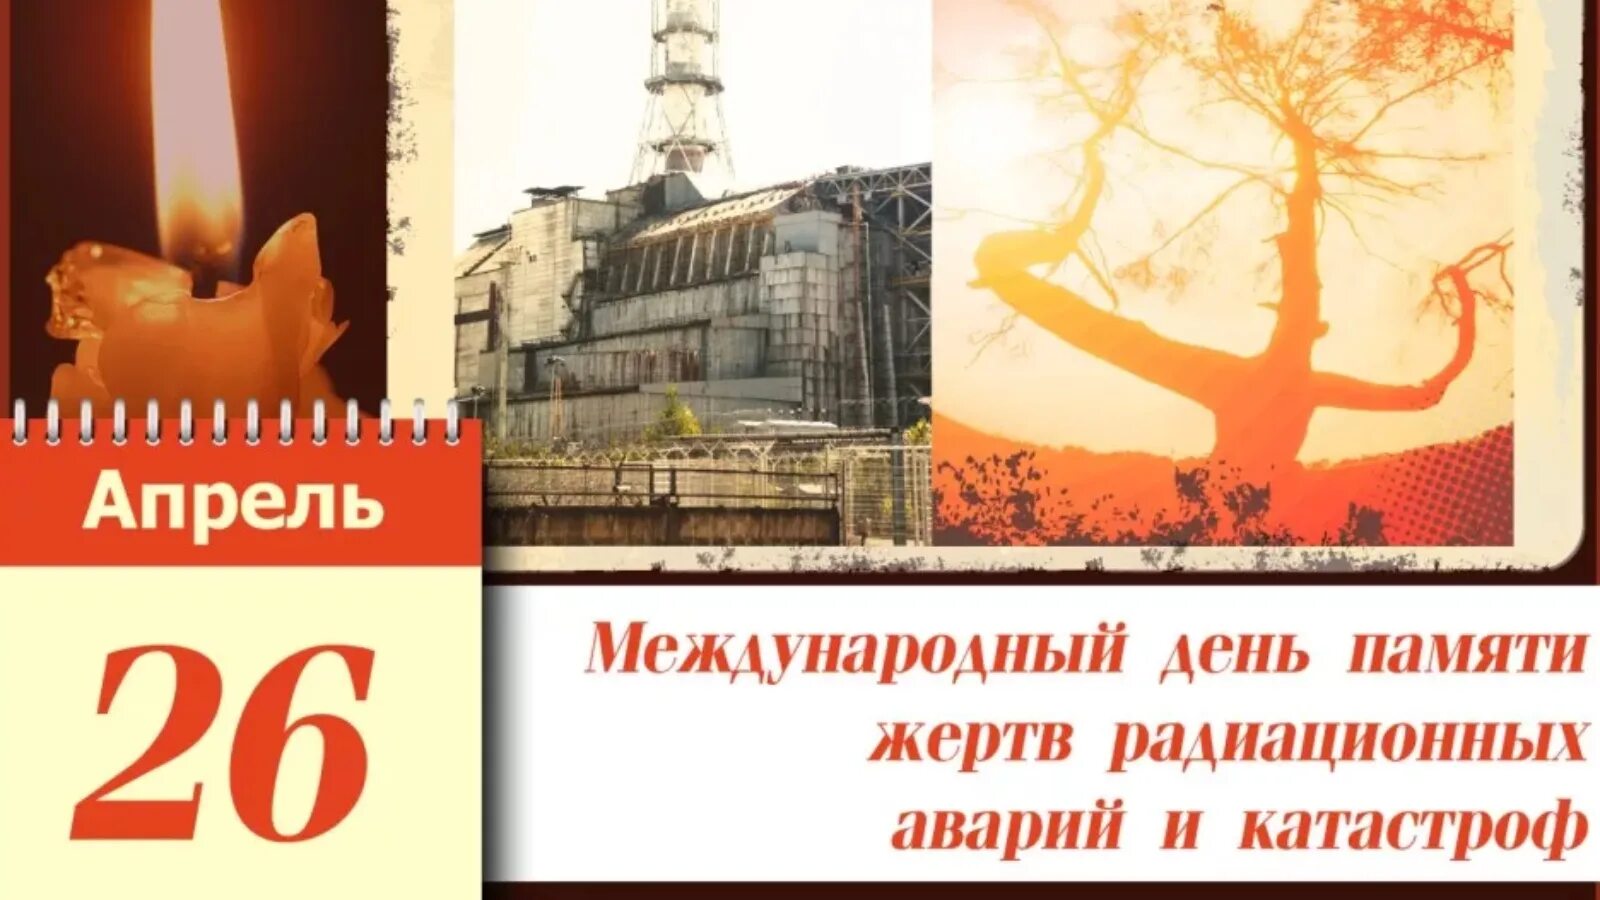 День памяти погибших в радиационных авариях и катастрофах. 26 Апреля день памяти погибших в радиационных авариях и катастрофах. День памяти жертв Чернобыля. 26 Апреля. 26 апреля 2021 г